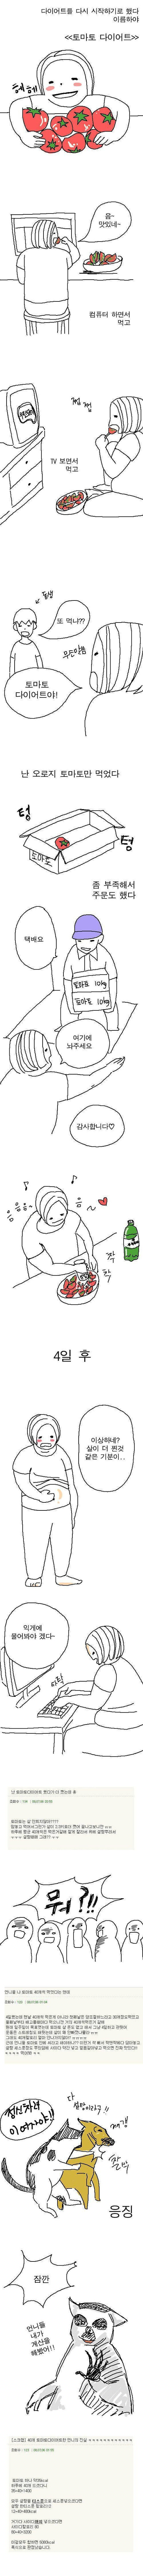 토마토 다이어트 레전드 후기.jpg